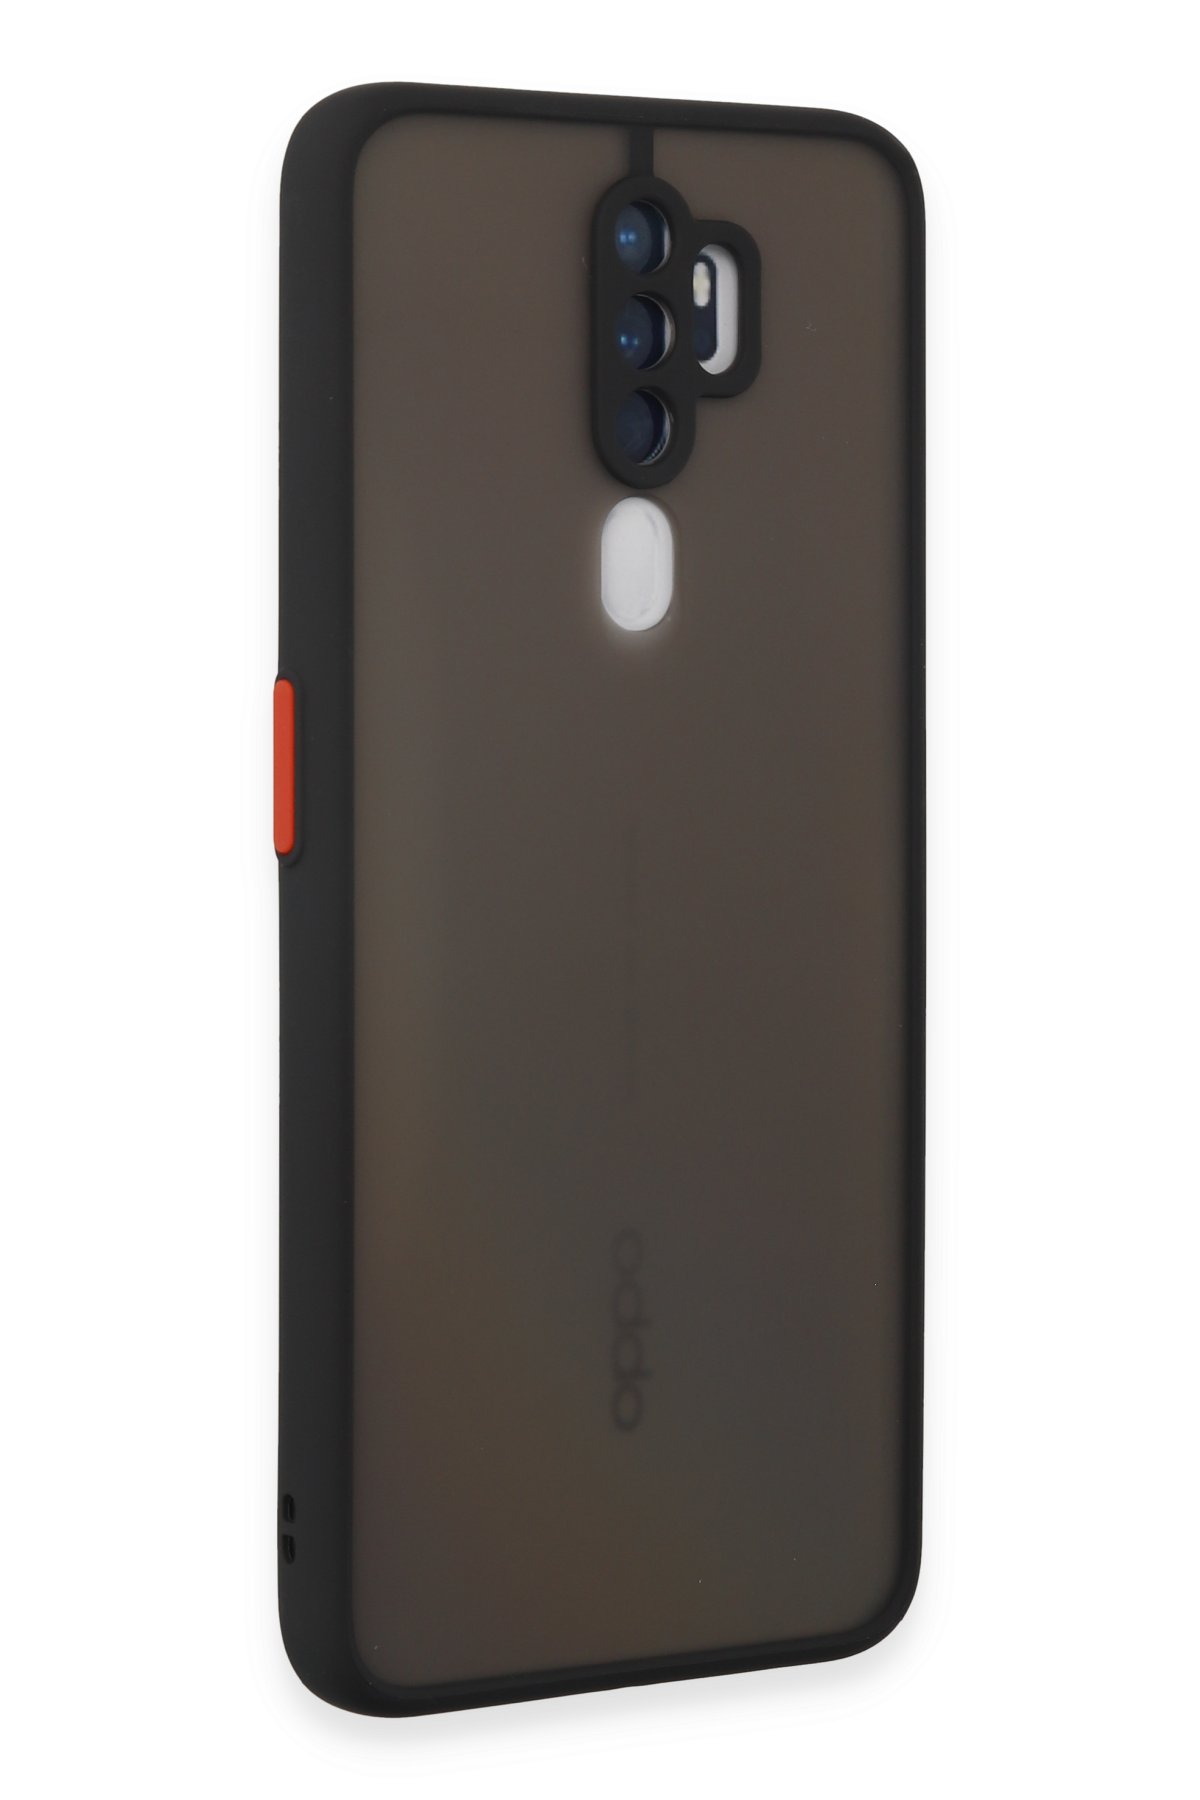 Newface Oppo A9 2020 Kılıf Trend S Plus Kapaklı Kılıf - Kırmızı